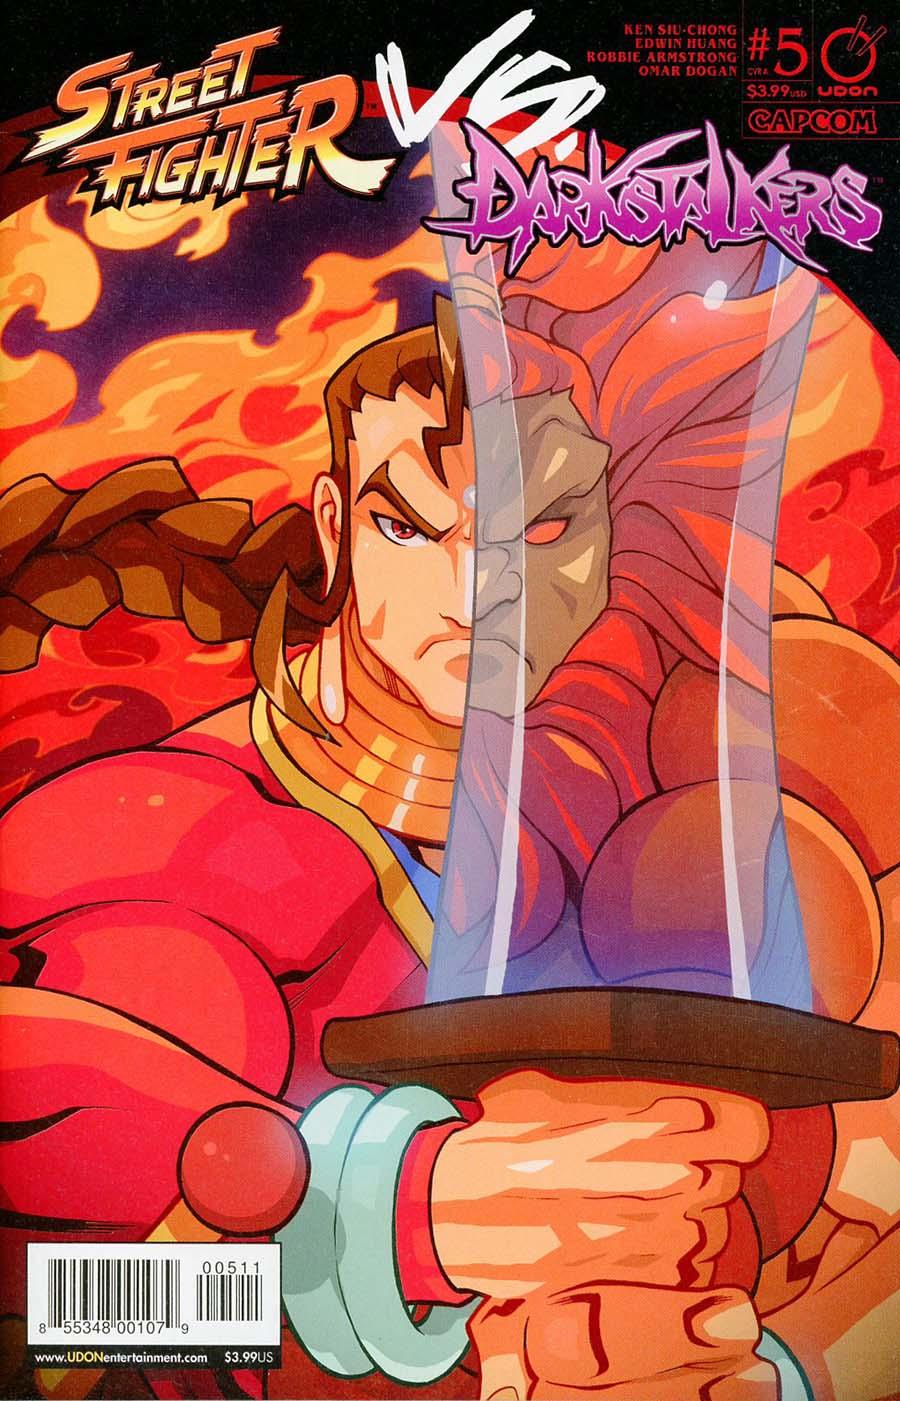 Street Fighter vs Darkstalkers Vol. 1 #5